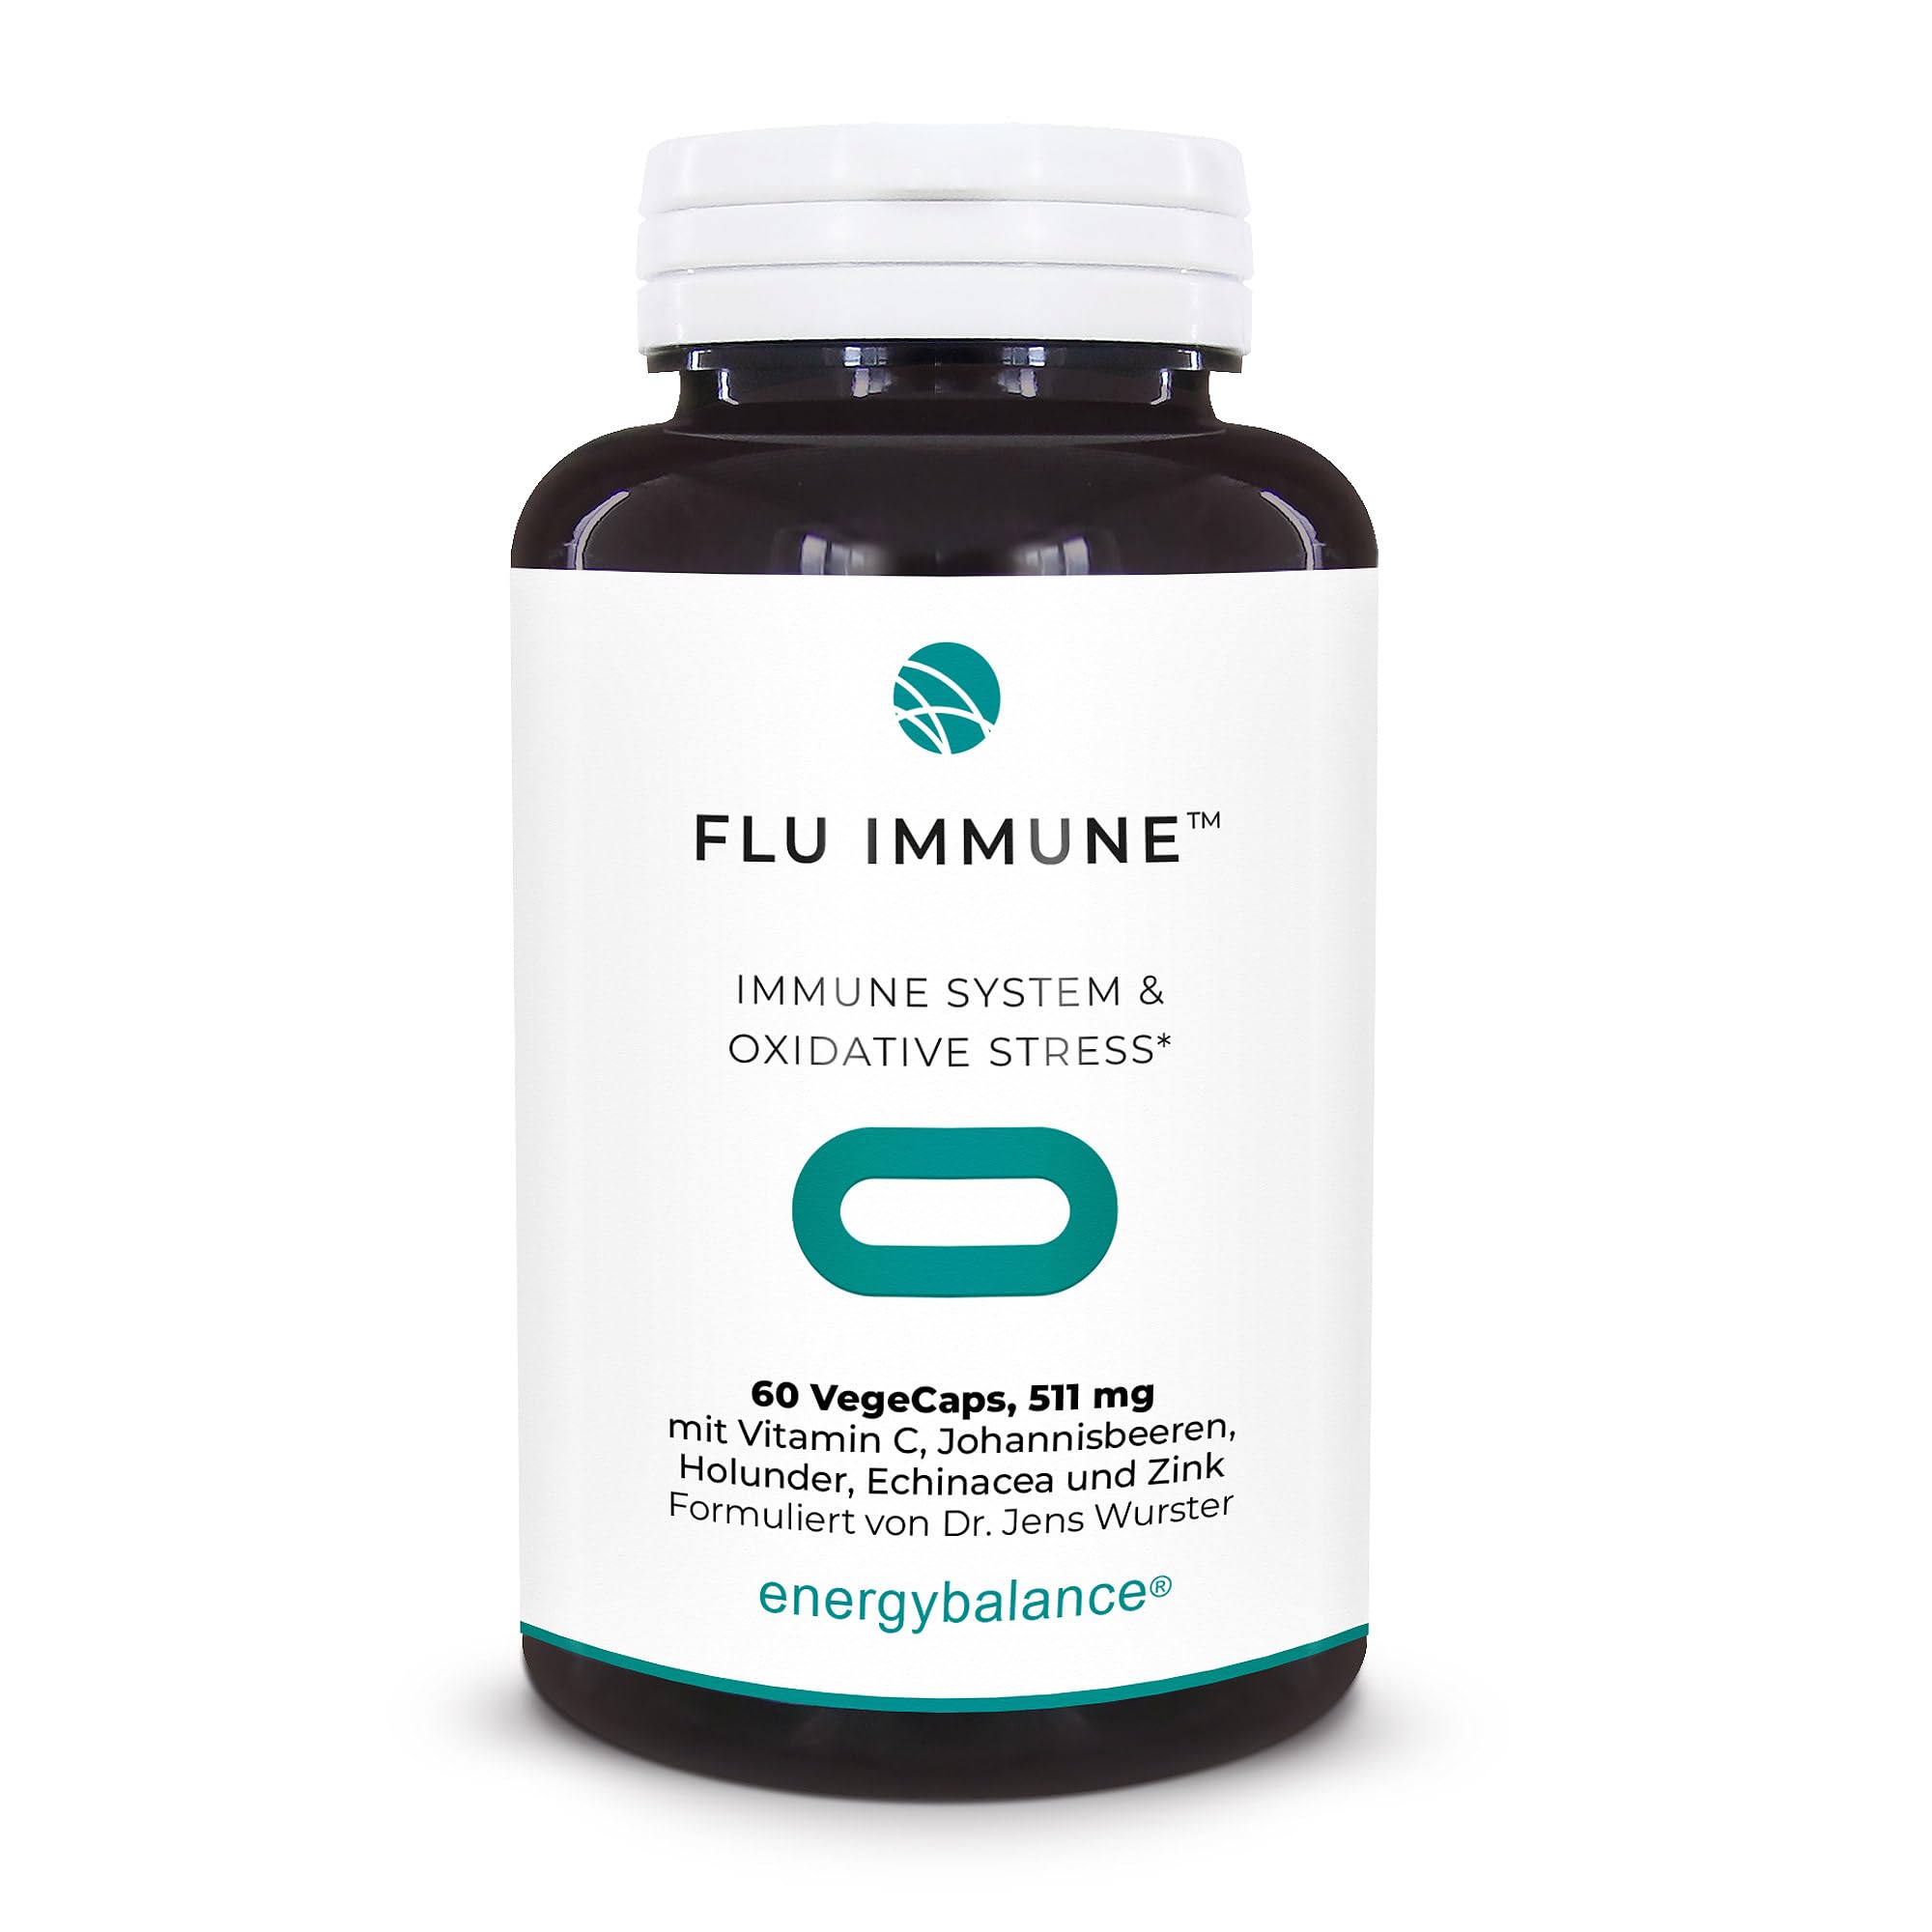 Flu-Immune 511mg - natürlicher Komplex - Hohe Bioverfügbarkeit - Antioxidantien - Vegan - Glutenfrei - Ohne Zusatzstoffe - 100% reine Zutaten - GVO-frei - Nahrungs-Äquivalent - 60 VegeCaps